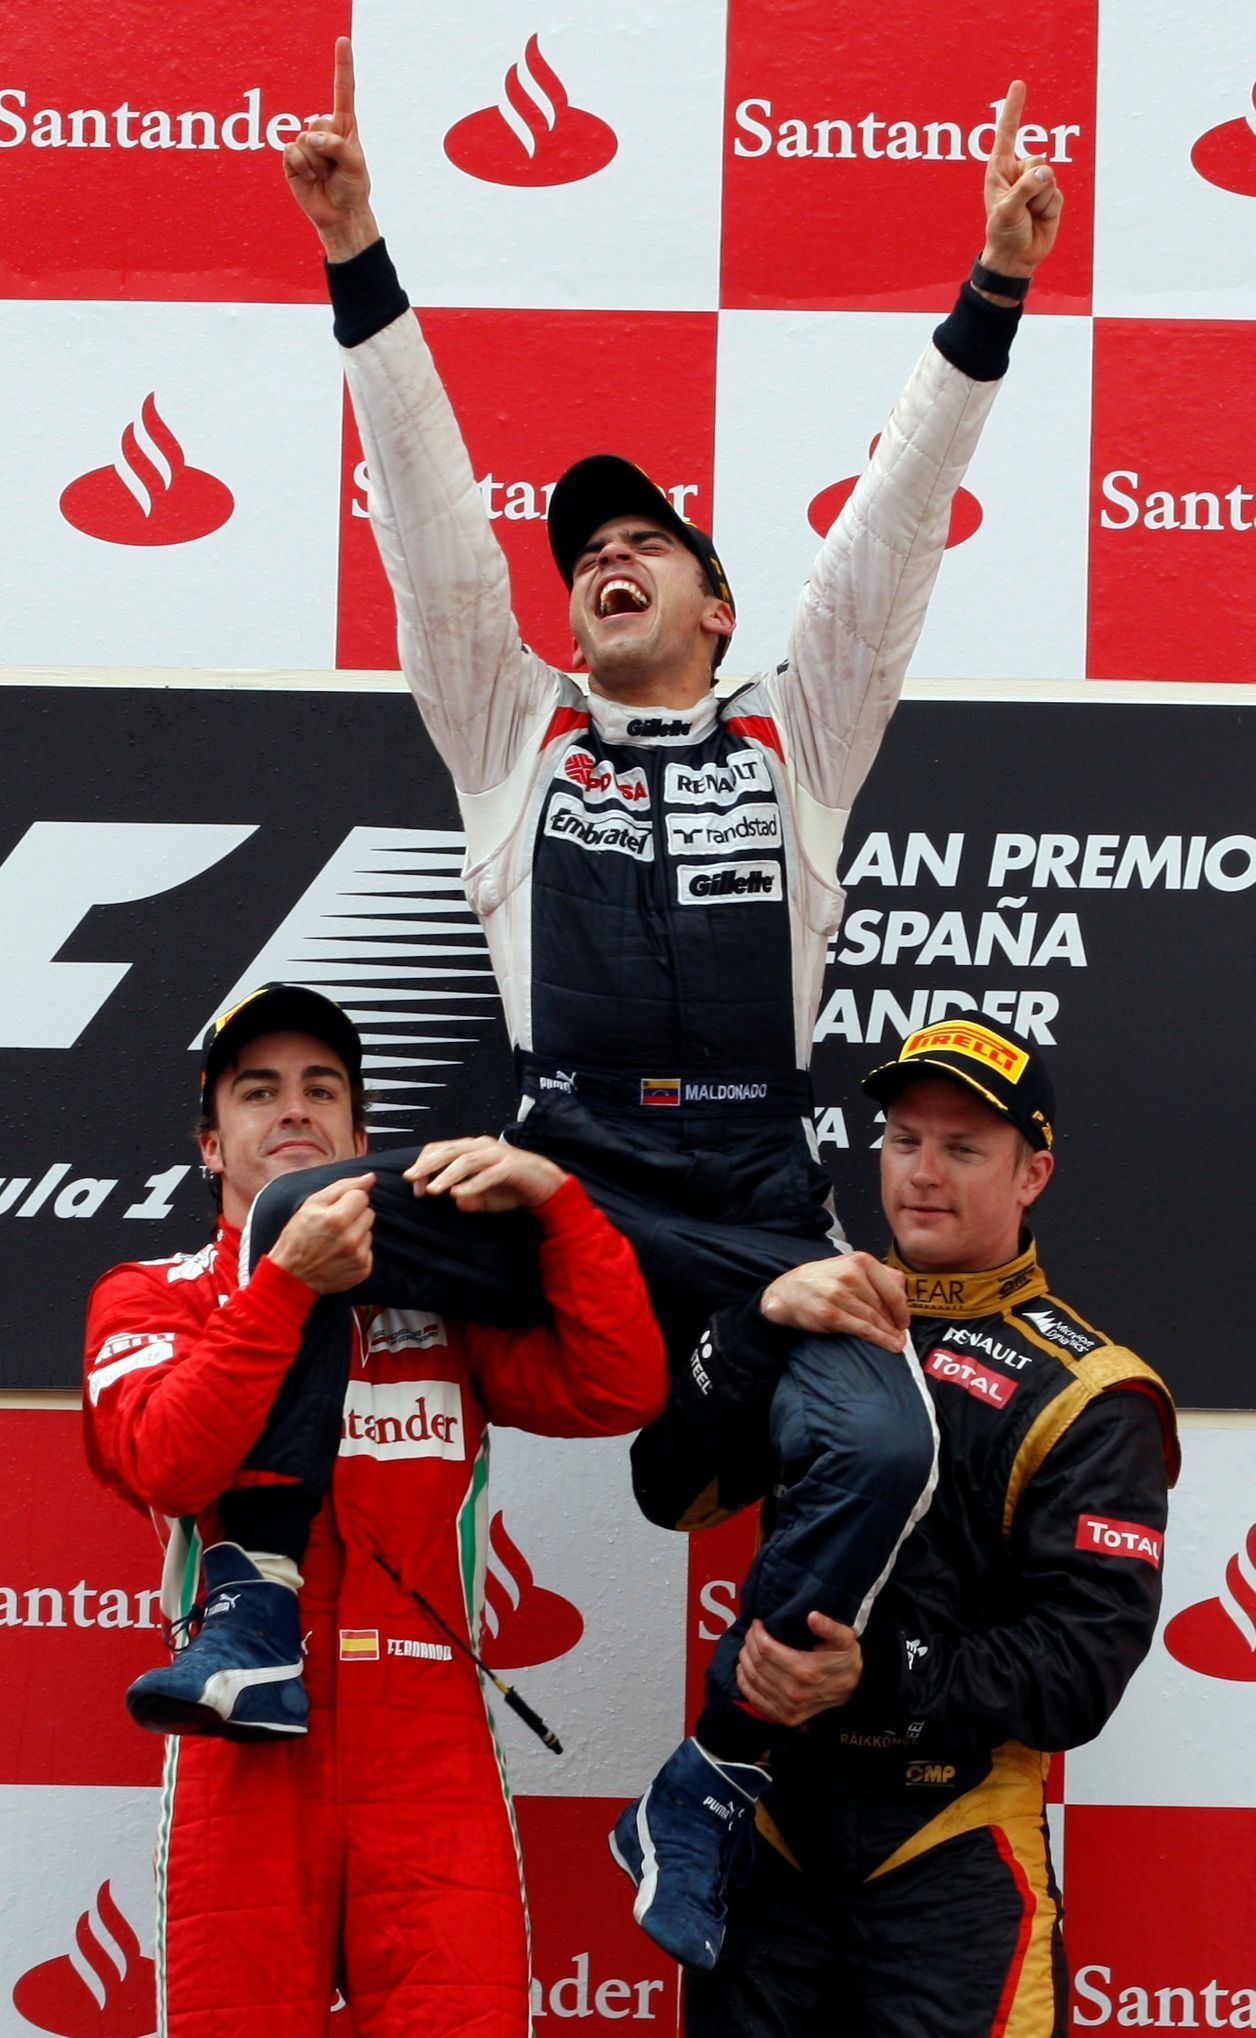 Pastor Maldonado (Wlliams) slaví vítězství v GP Španělska 2012